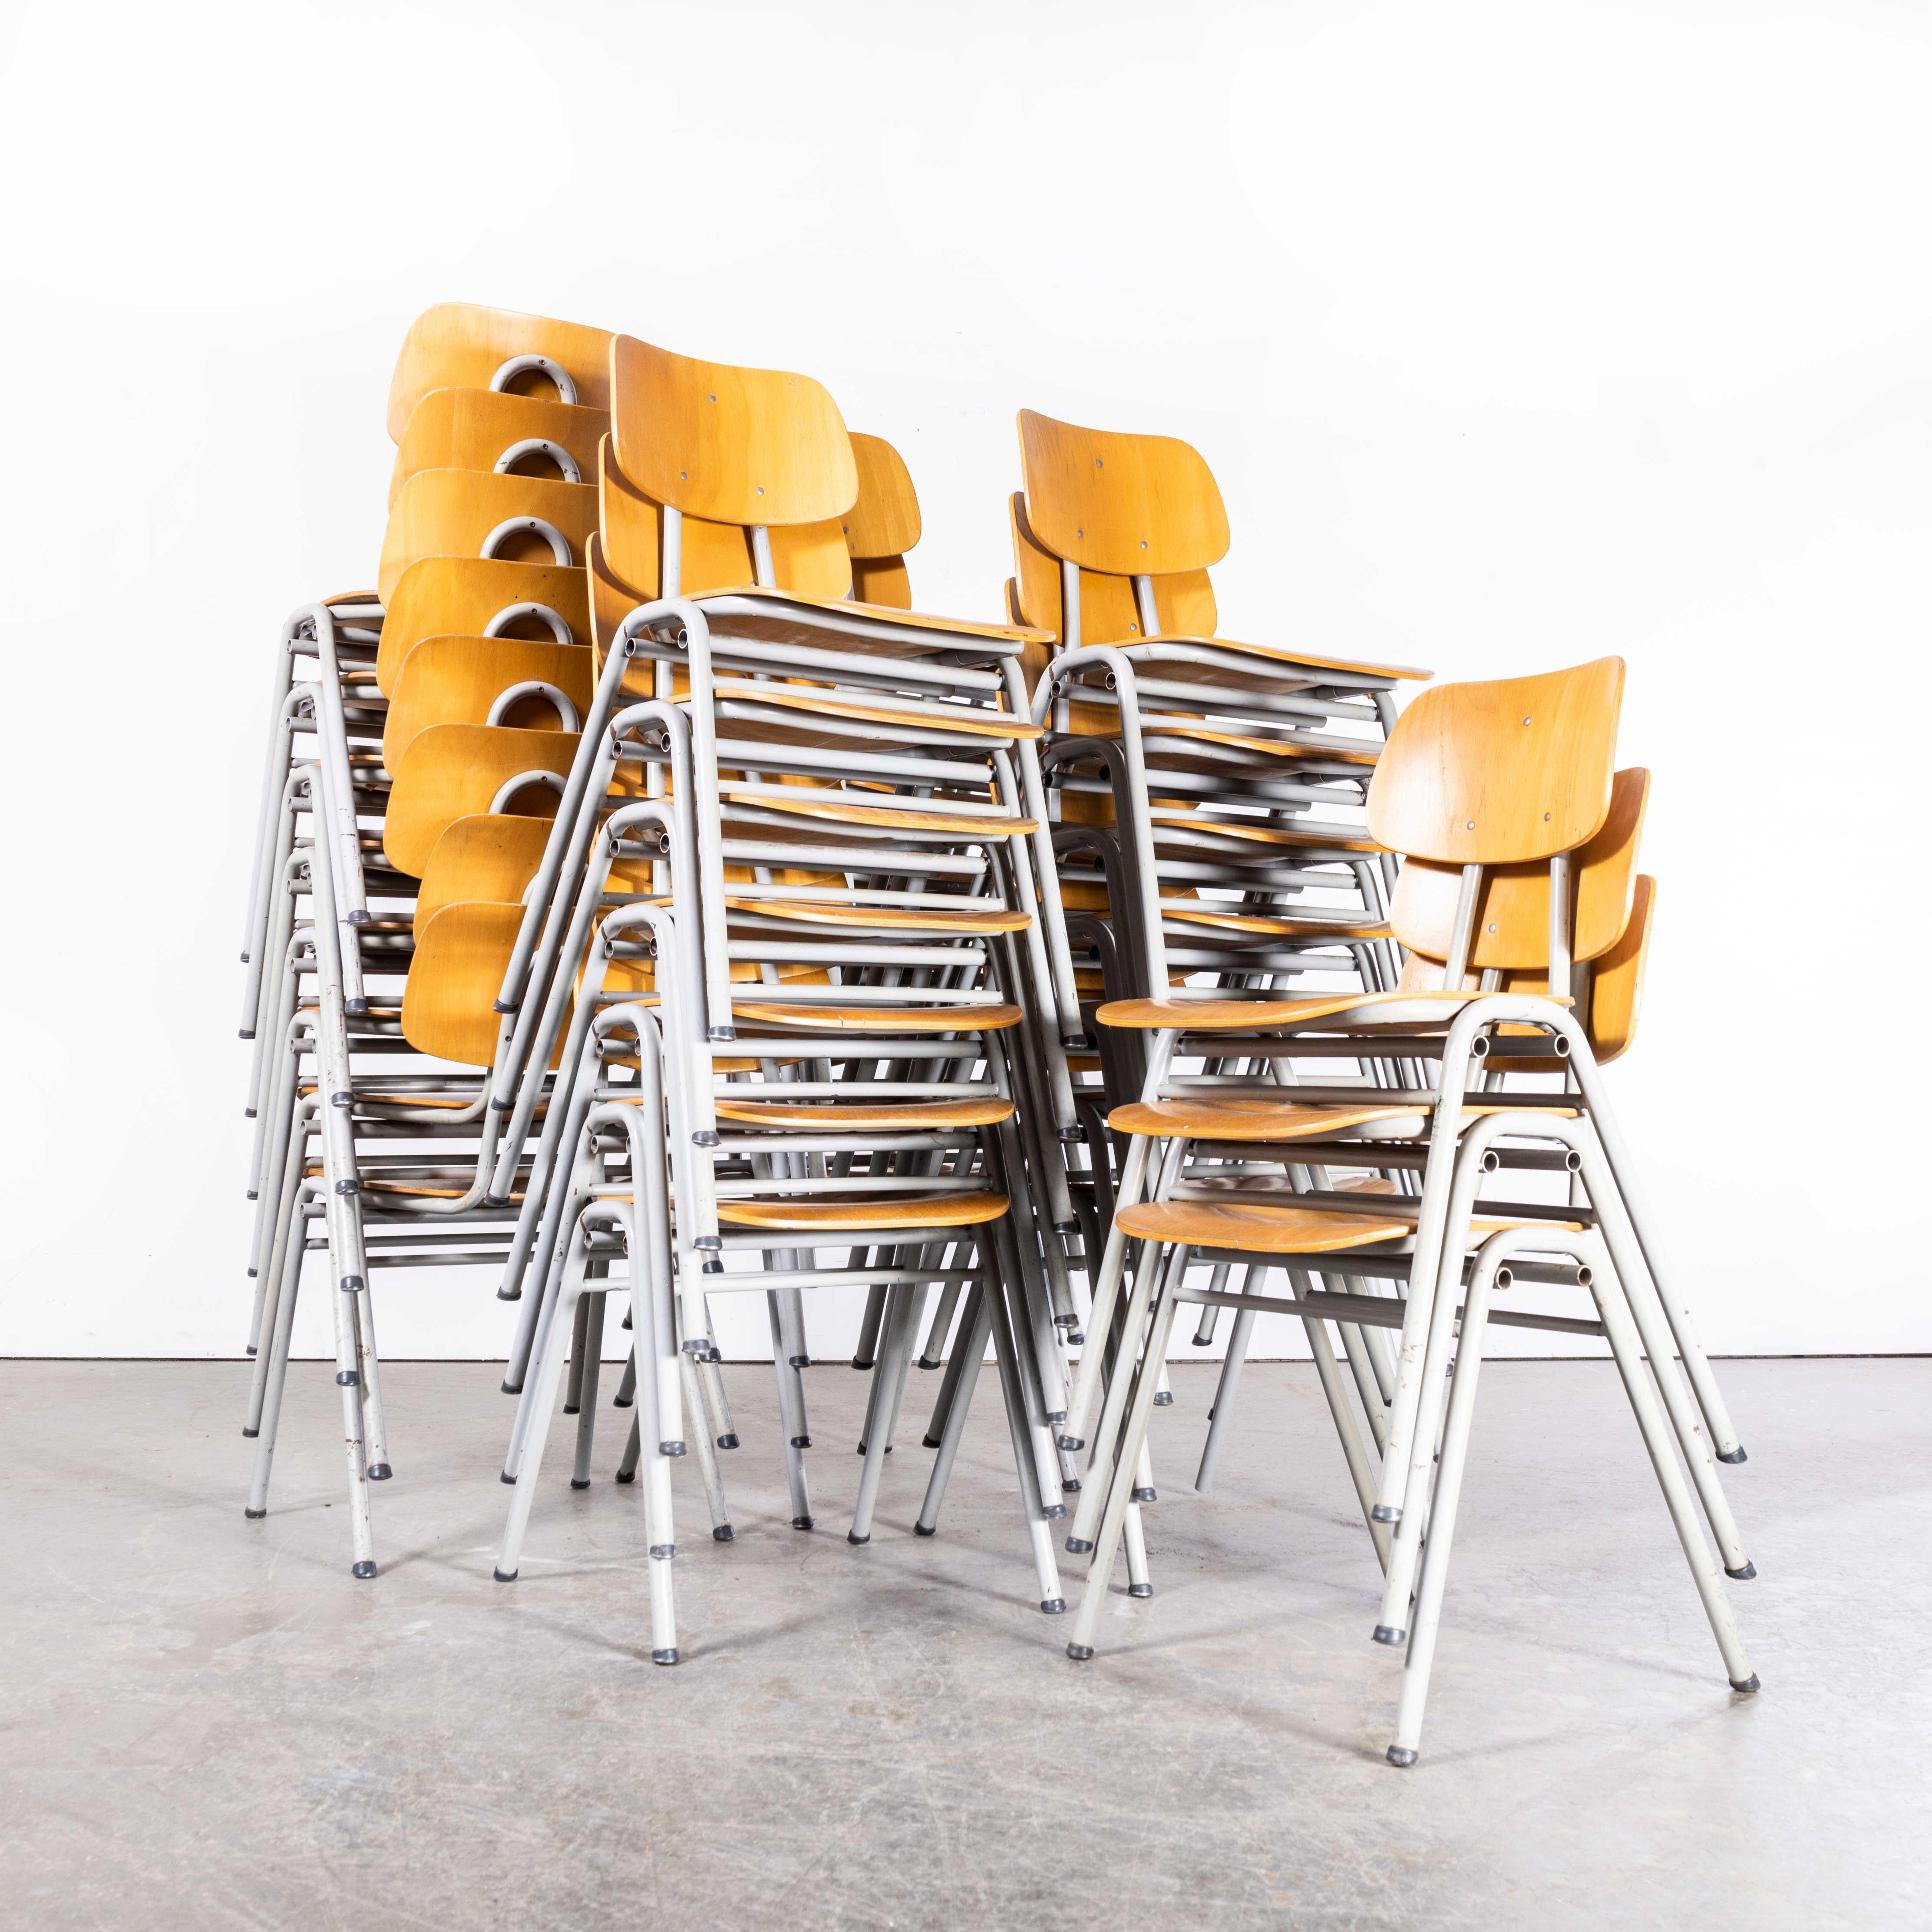 1960's Classic Dutch University Dining Chairs - Verschiedene Mengen verfügbar
1960's Classic Dutch University Dining Chairs - Verschiedene Mengen verfügbar. Diese Stühle stammen von einer Universität in den Niederlanden. Diese Stühle sind sehr